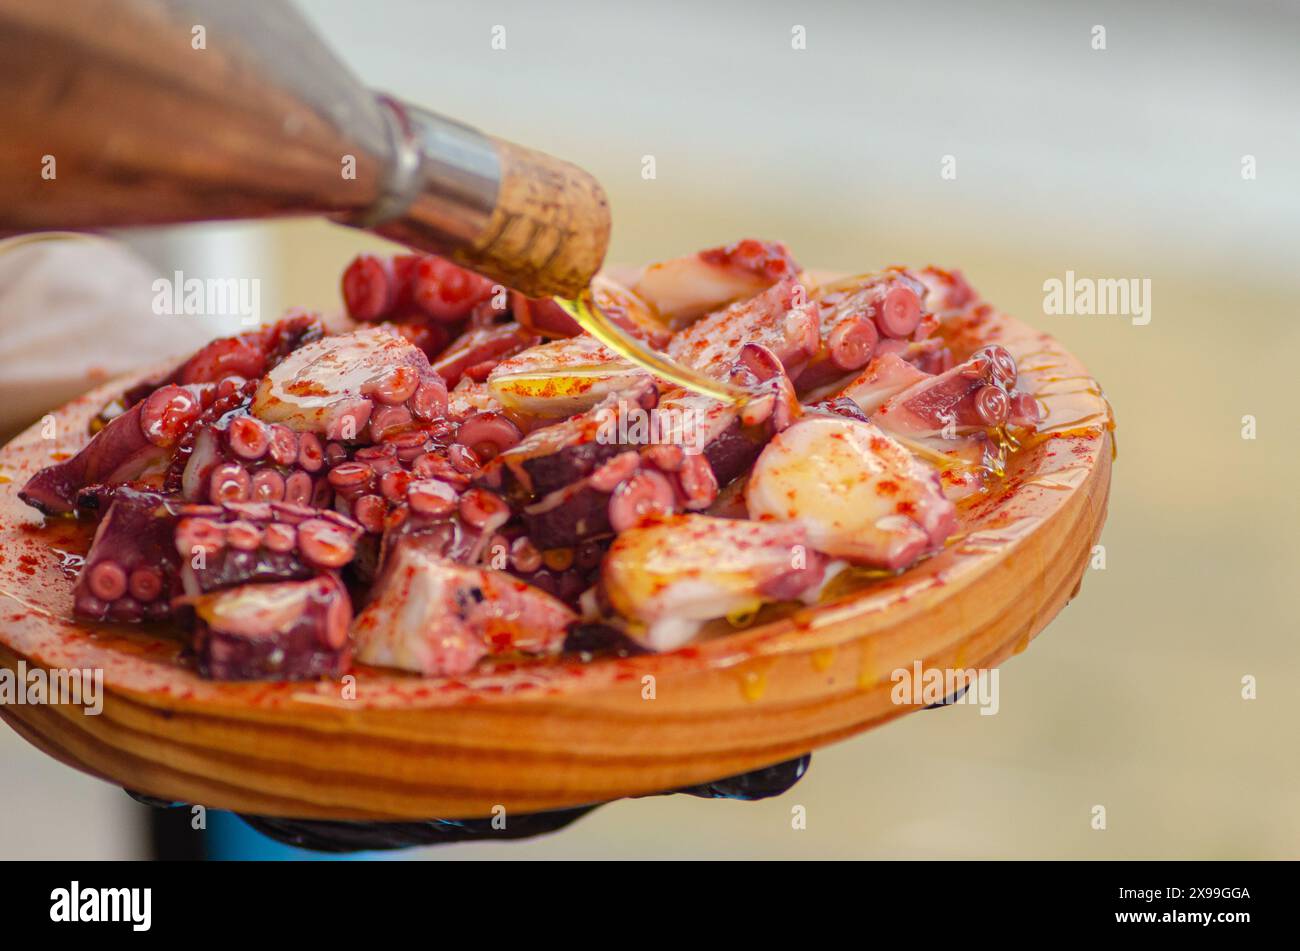 Huile d'olive sur une portion de poulpe, préparée dans le style traditionnel Pulpo a feira. Galice, Espagne Banque D'Images